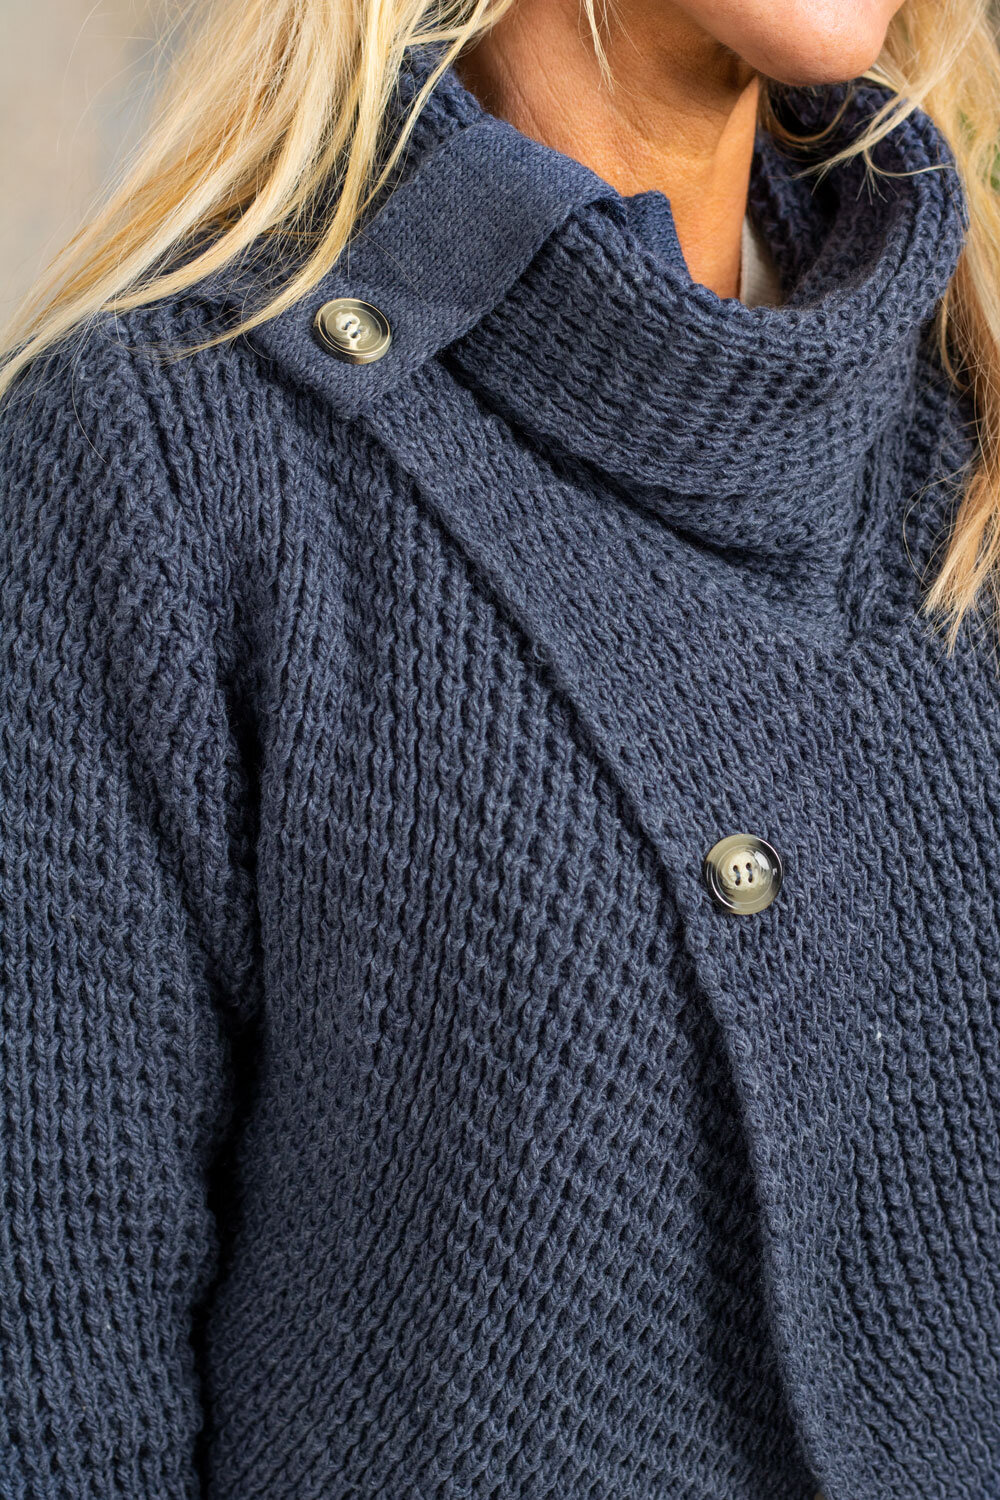 Esmeralda Knitted Sweater - Buttons - Denim blue